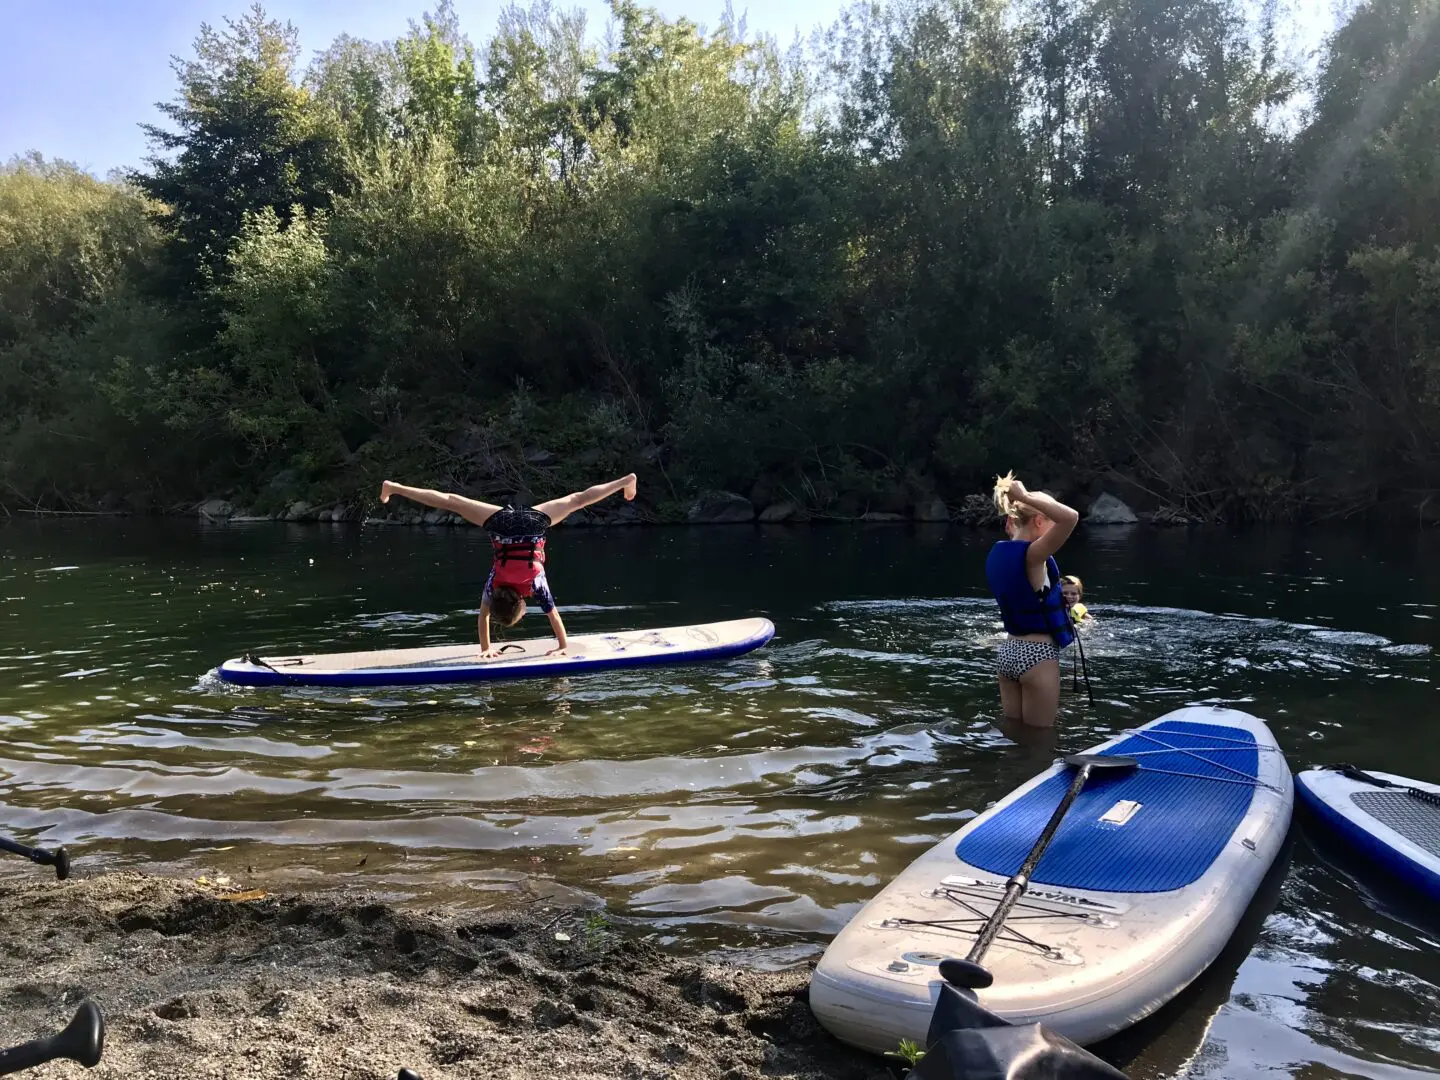 Kids having fun in a river